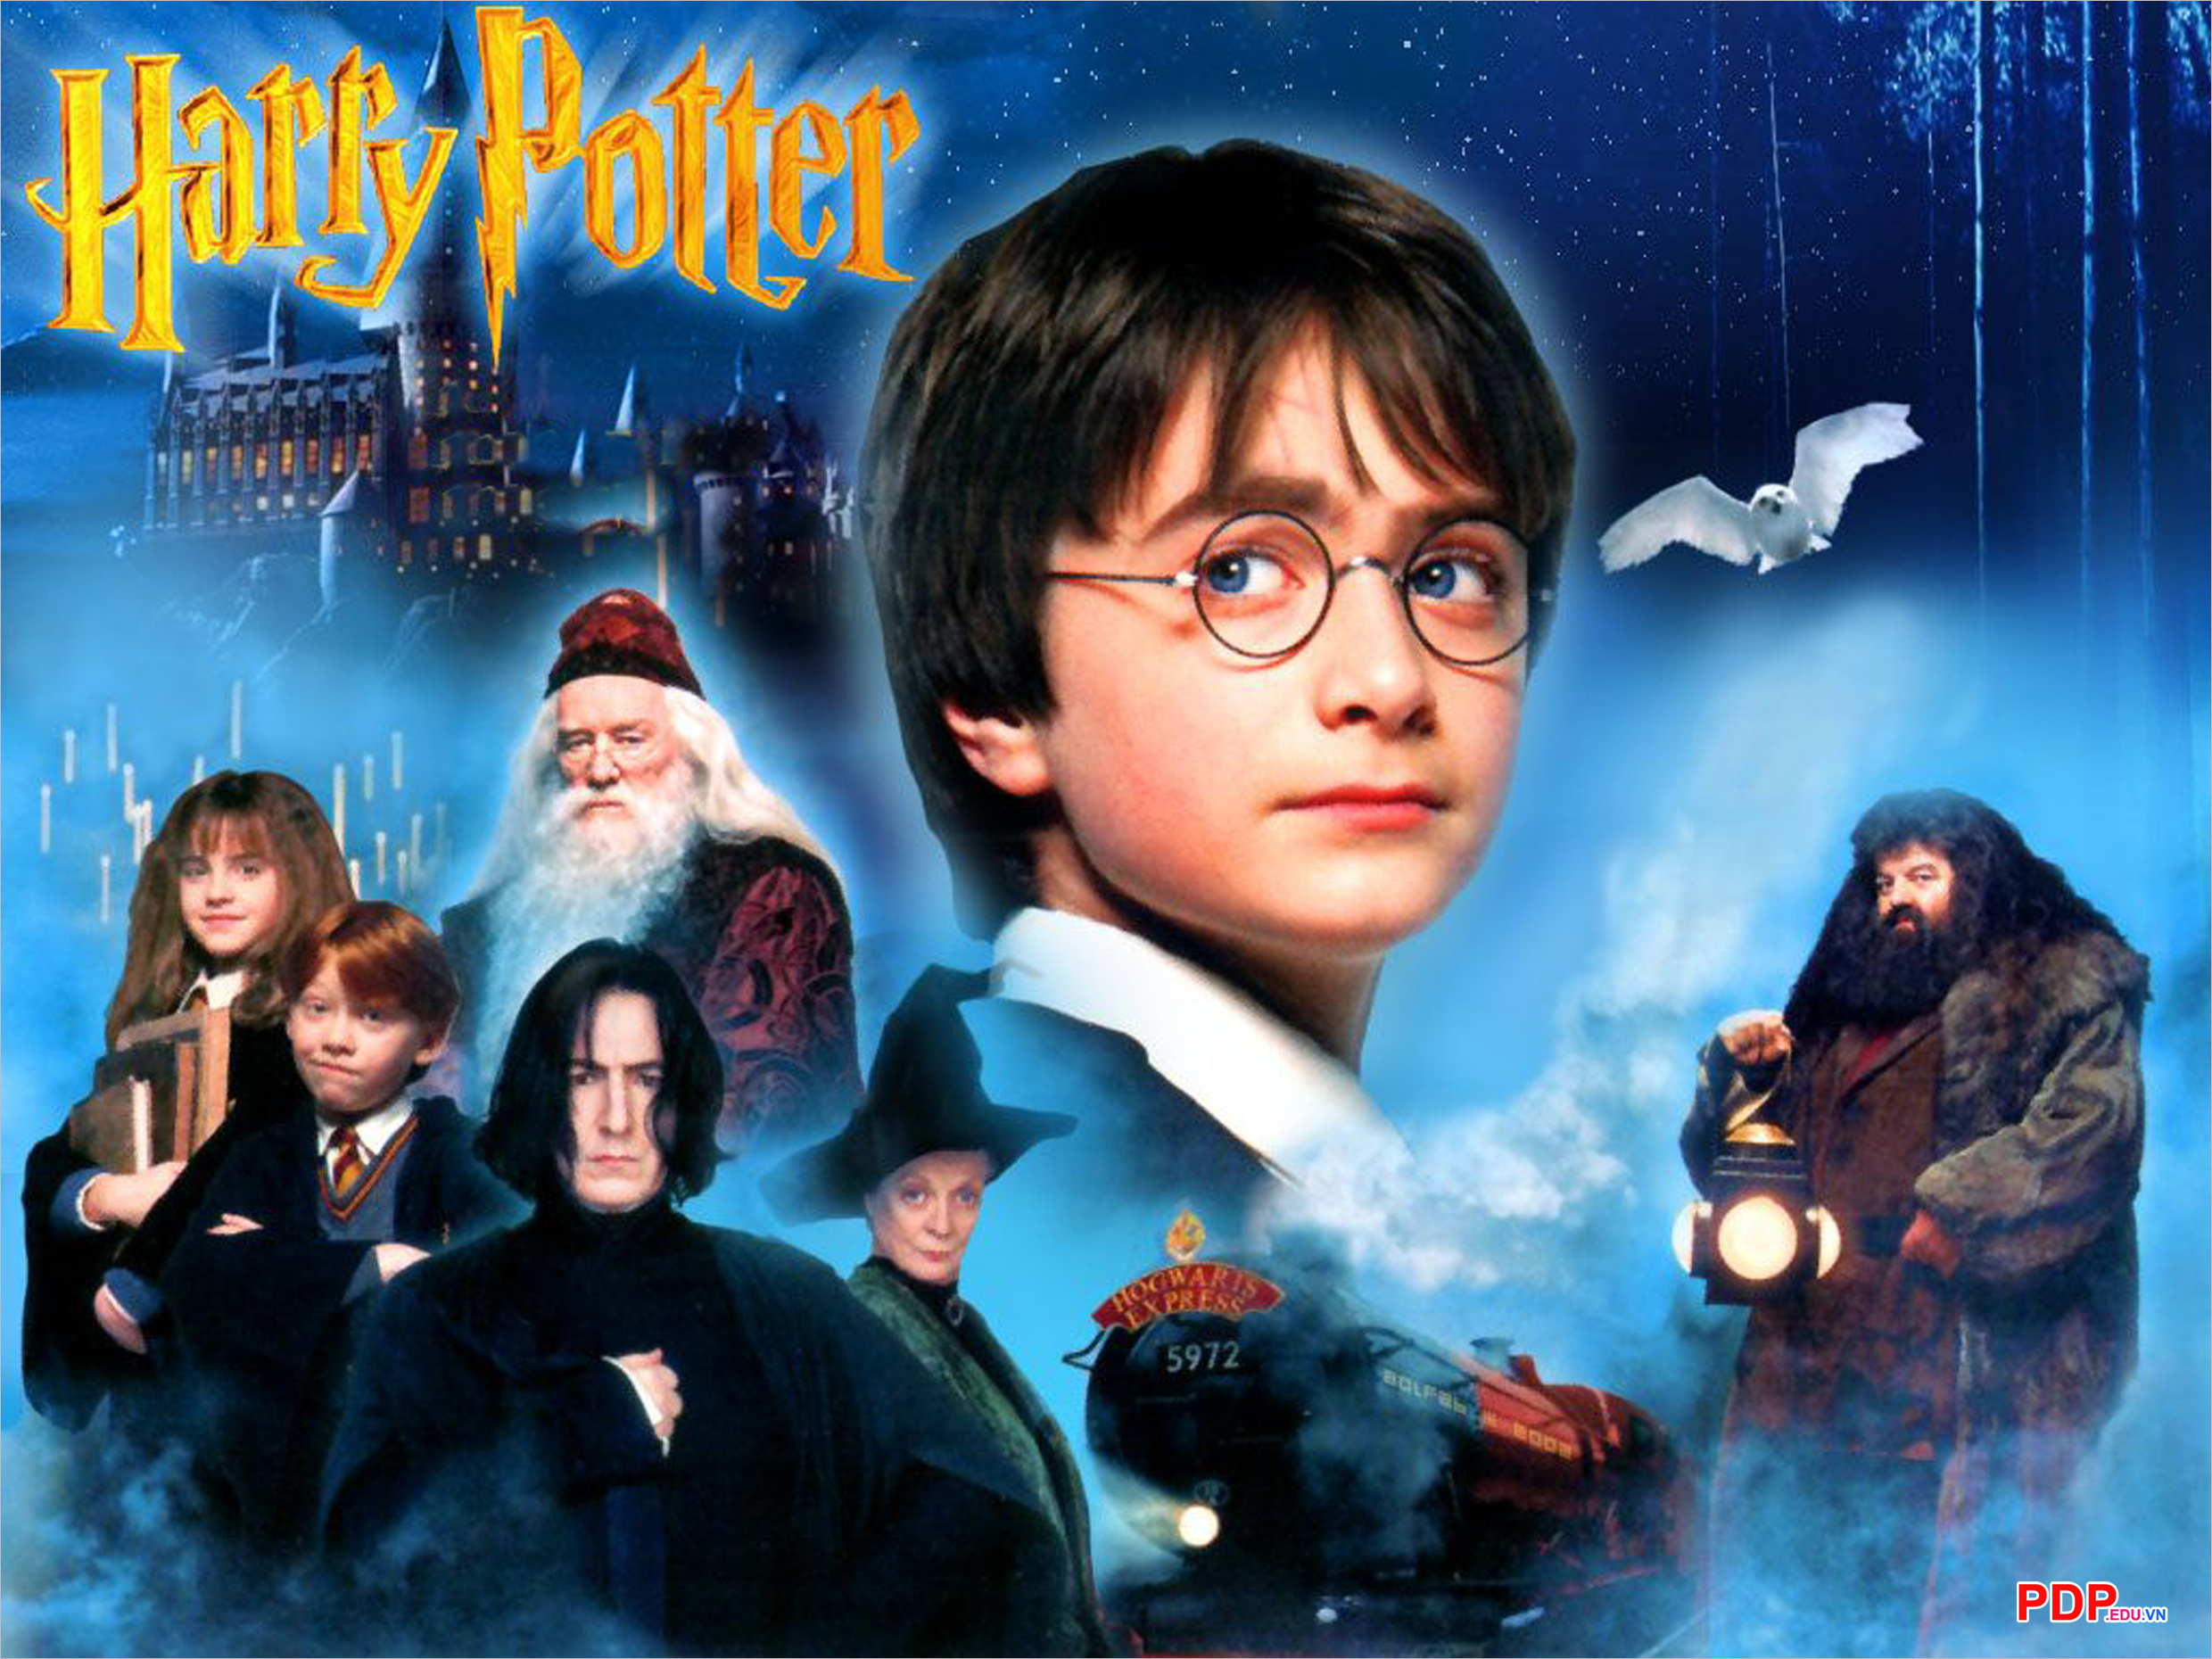 Loạt sai sót trong Harry Potter bị lật tẩy Chi tiết quan trọng thoắt ẩn  thoắt hiện cặp kính của cụ Dumbledore để lộ bí mật hậu trường